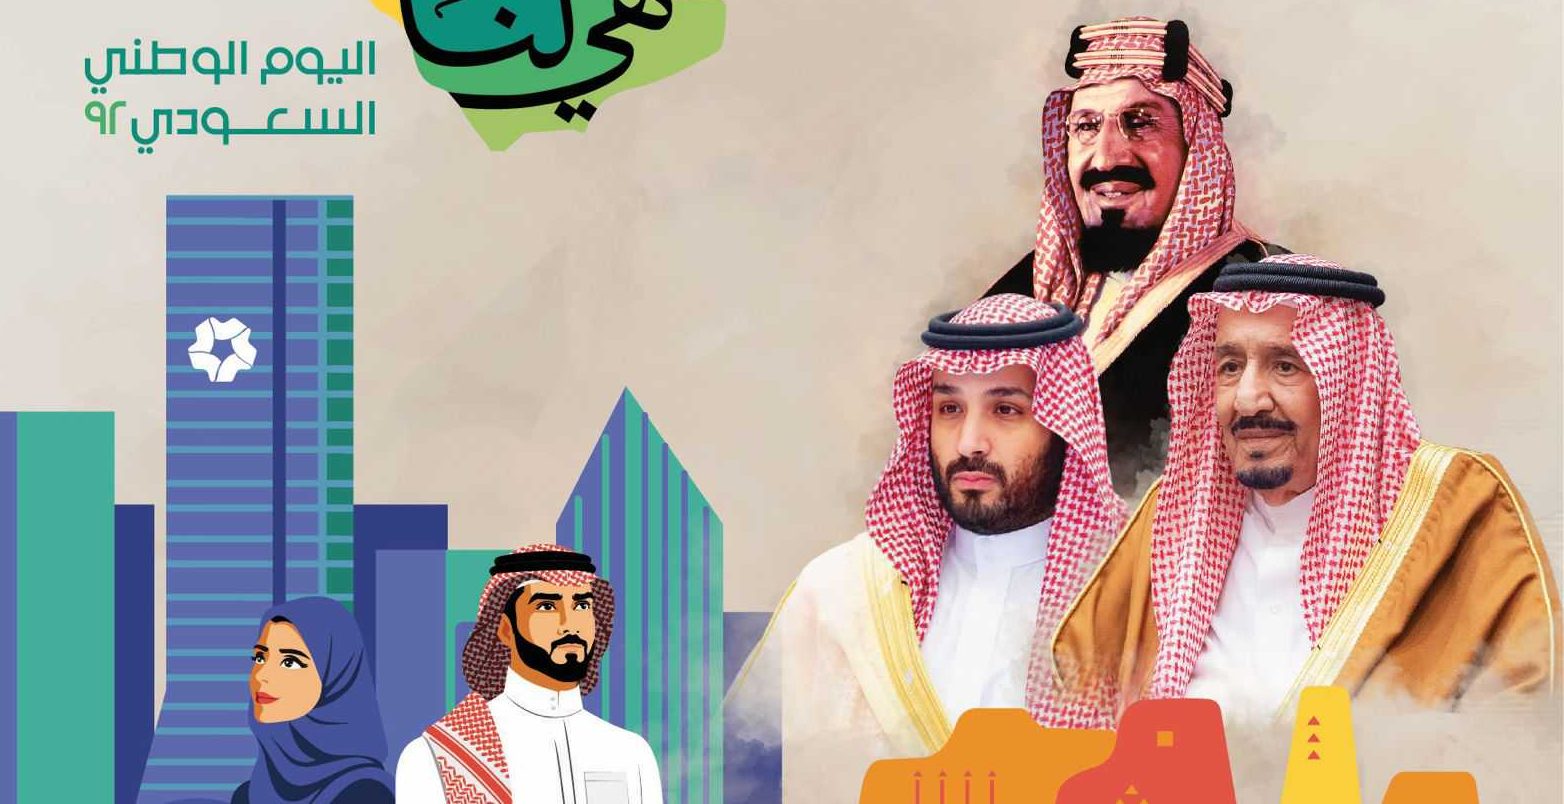 اقرأ … تتيح للمشاهدين من انحاء العالم المشاركة باليوم الوطني السعودي 92